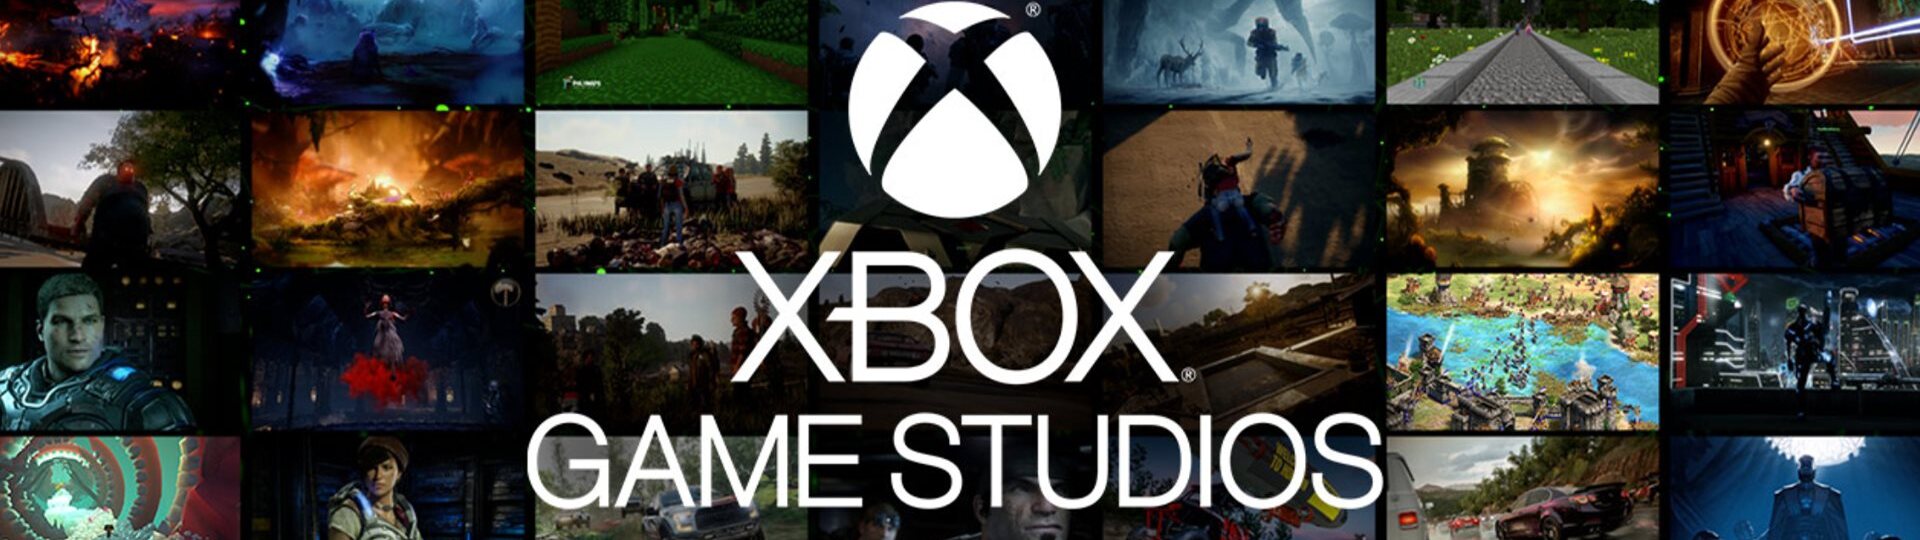 Šéf Xboxu si přeje, aby série Call of Duty byla nadále i na PlayStationu | Novinky